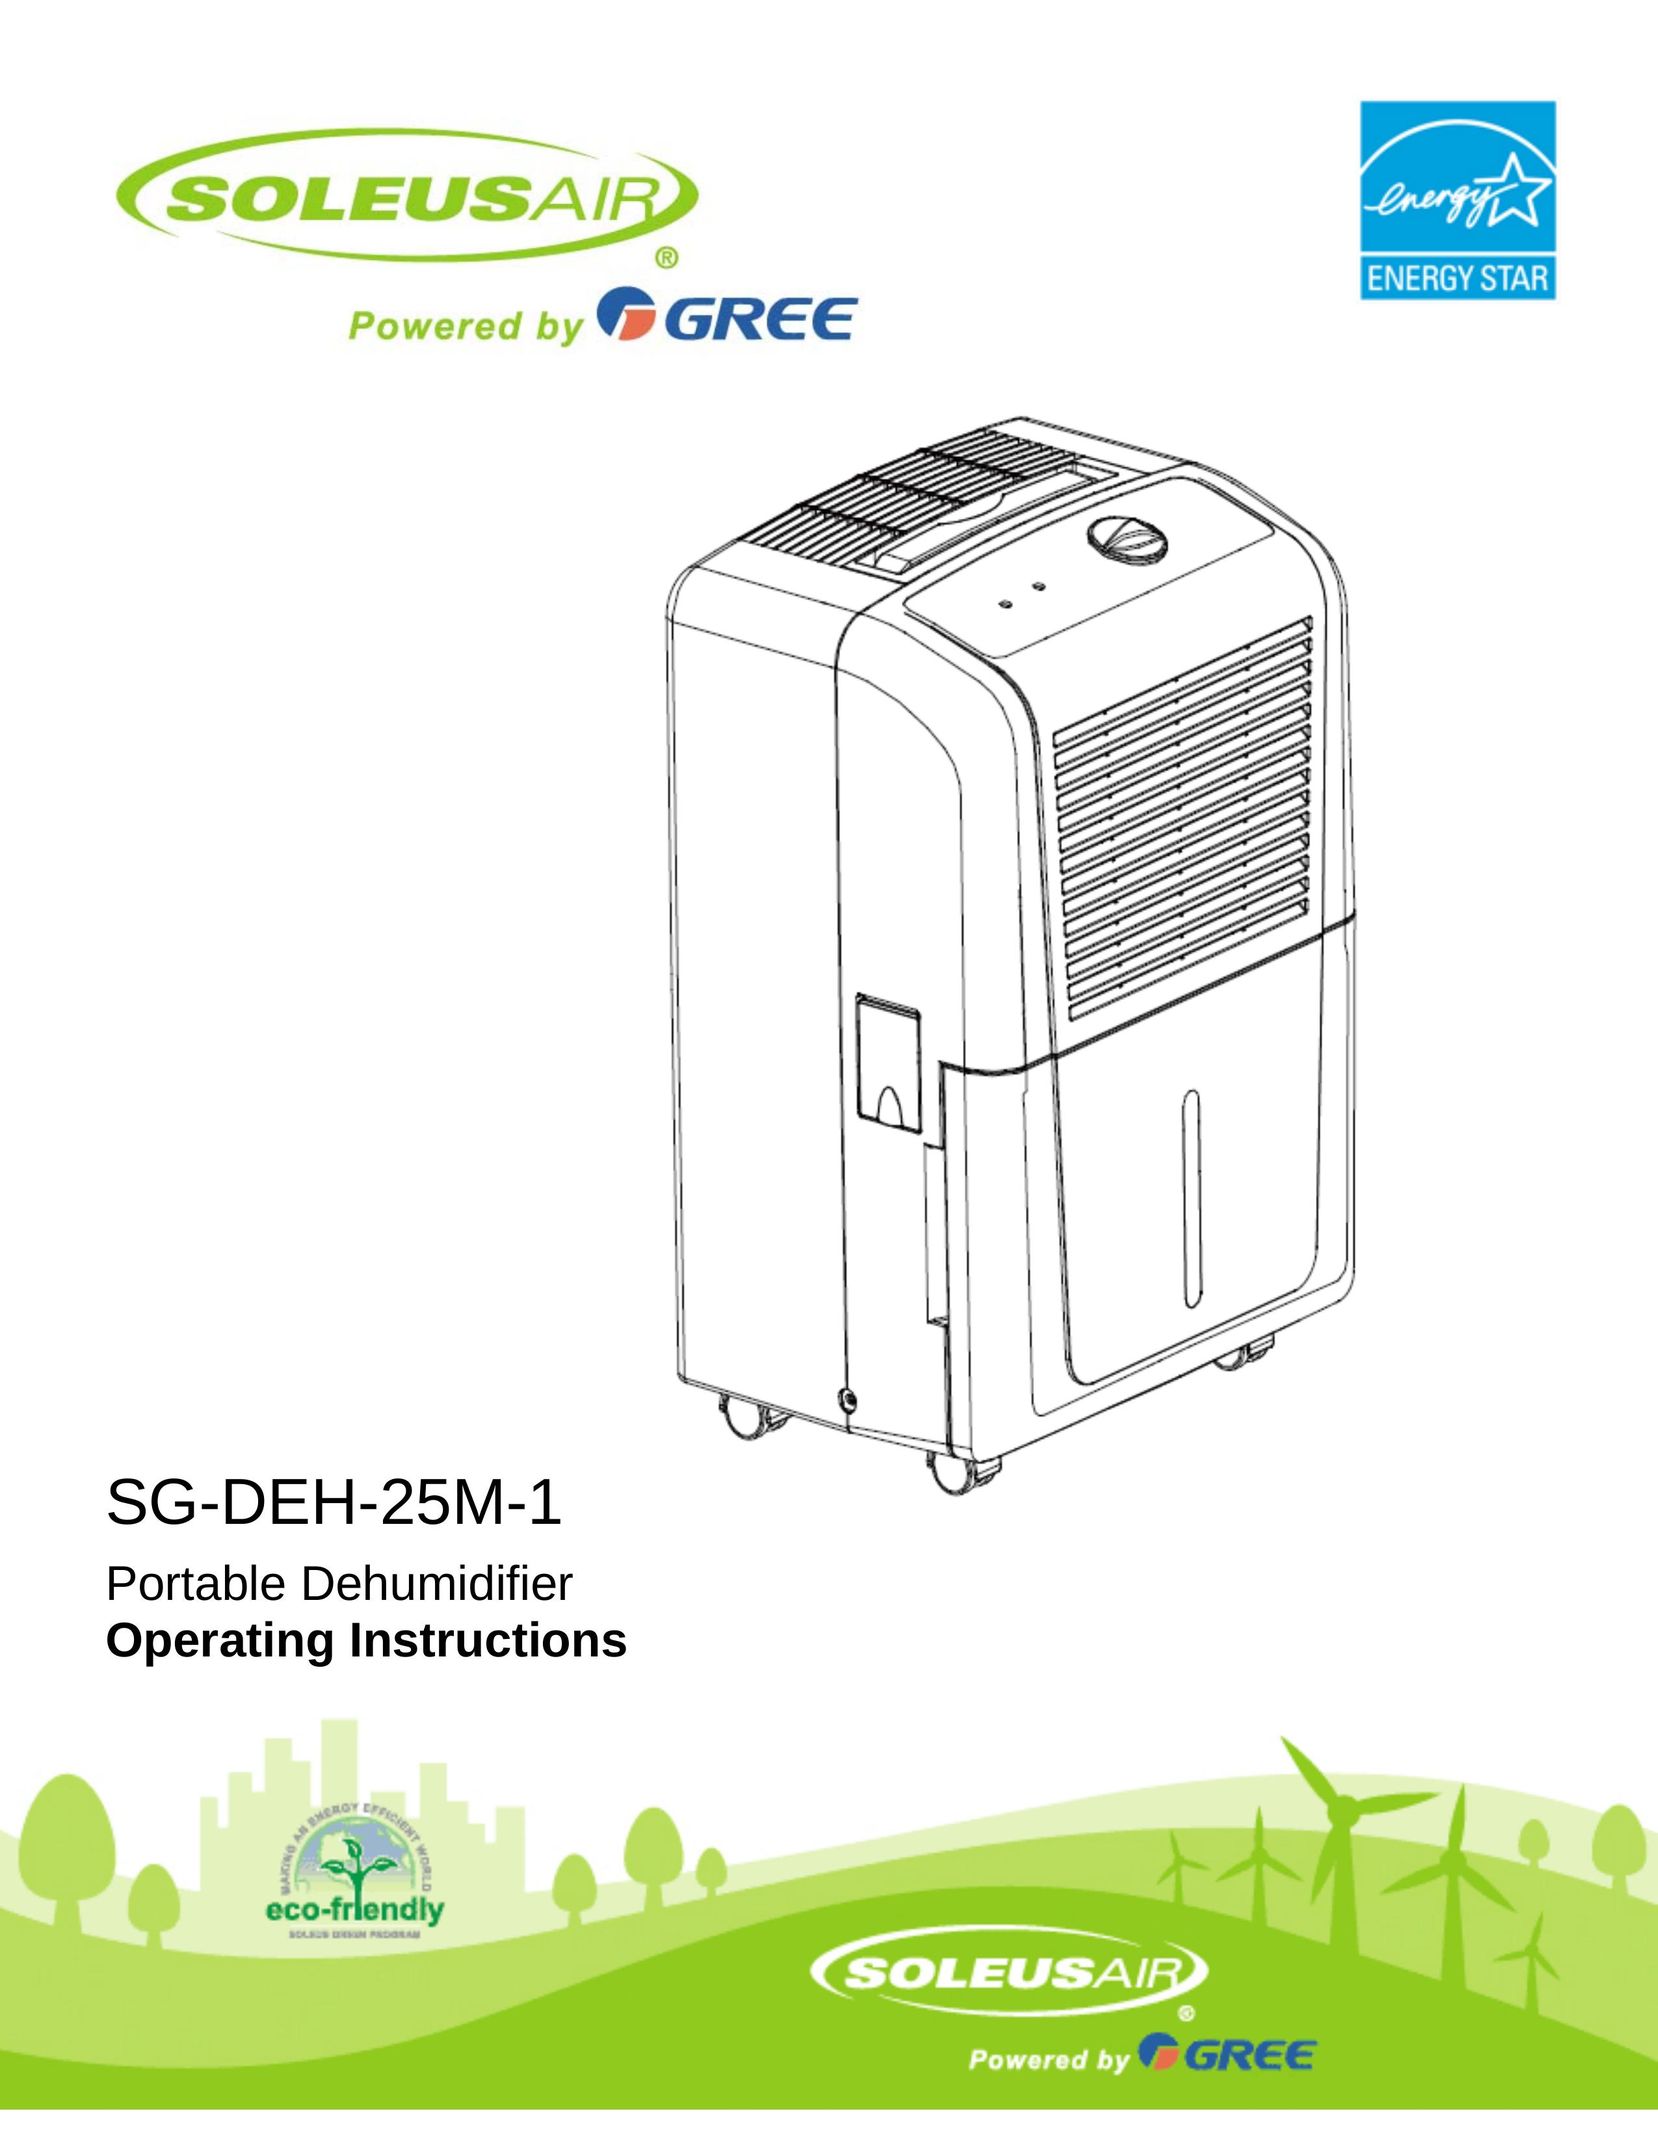 Soleus Air SG-DEH-25M-1 Dehumidifier User Manual